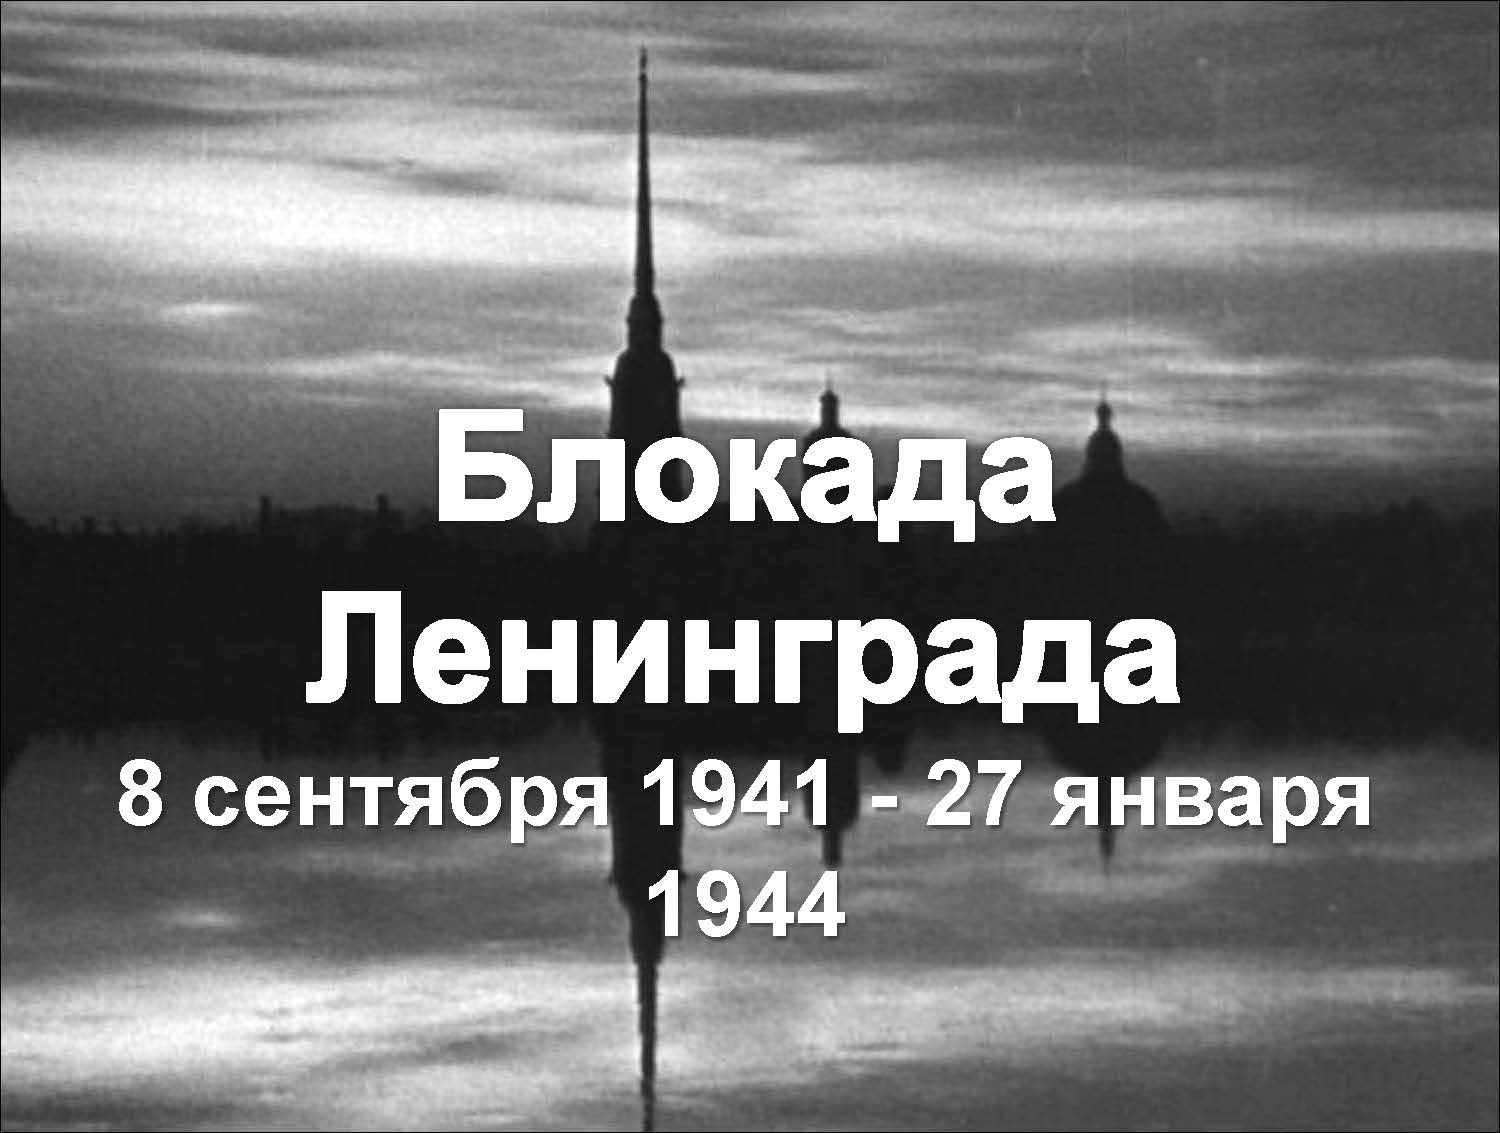 Воспитательное мероприятие, посвящённое дню полного освобождения Ленинграда от фашистской блокады.